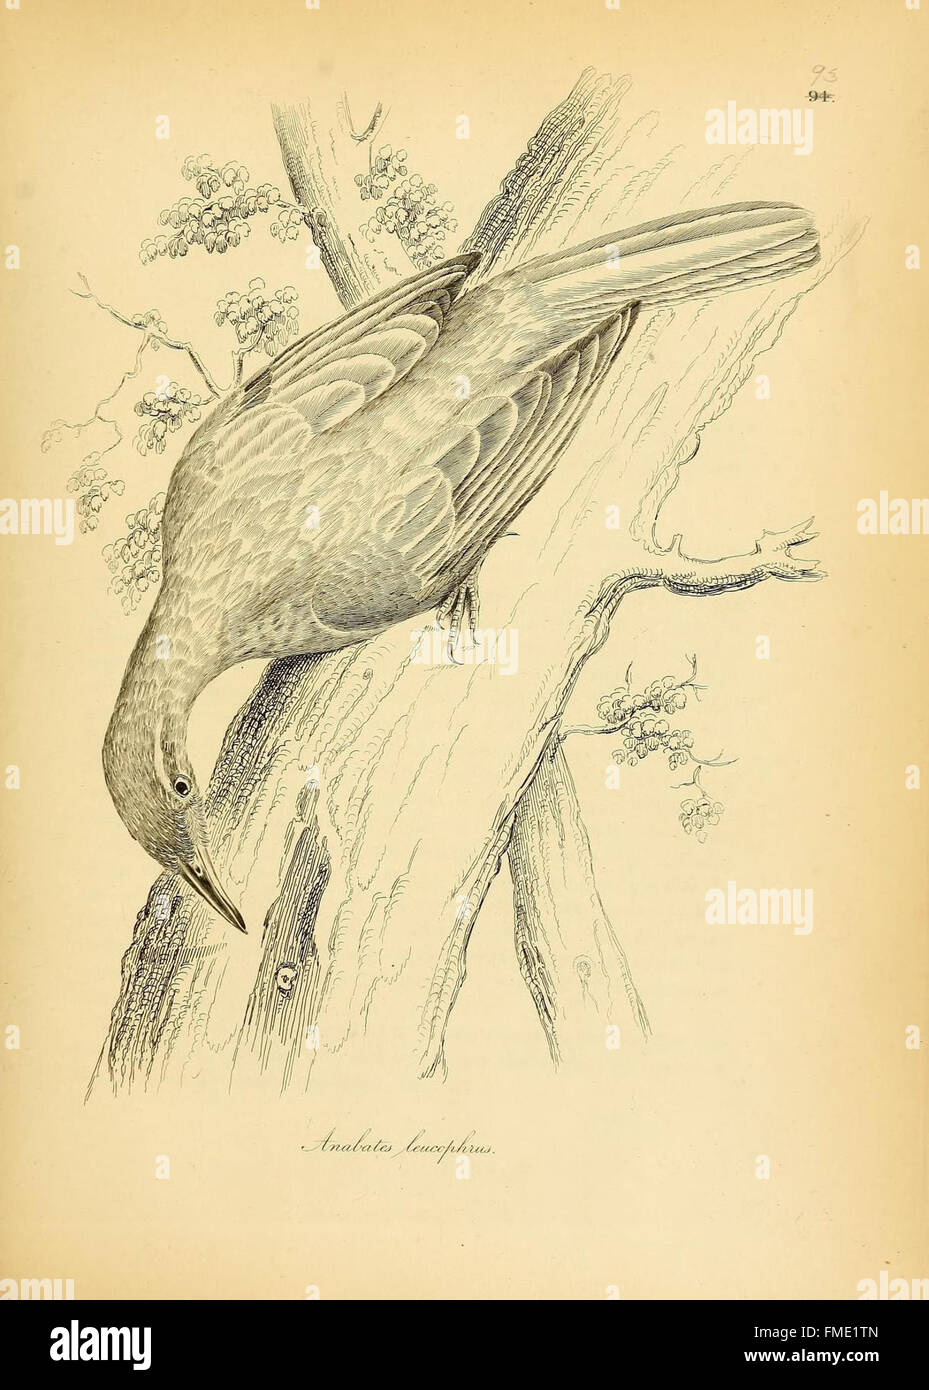 Illustrations de l'ornithologie (planche 93) Banque D'Images